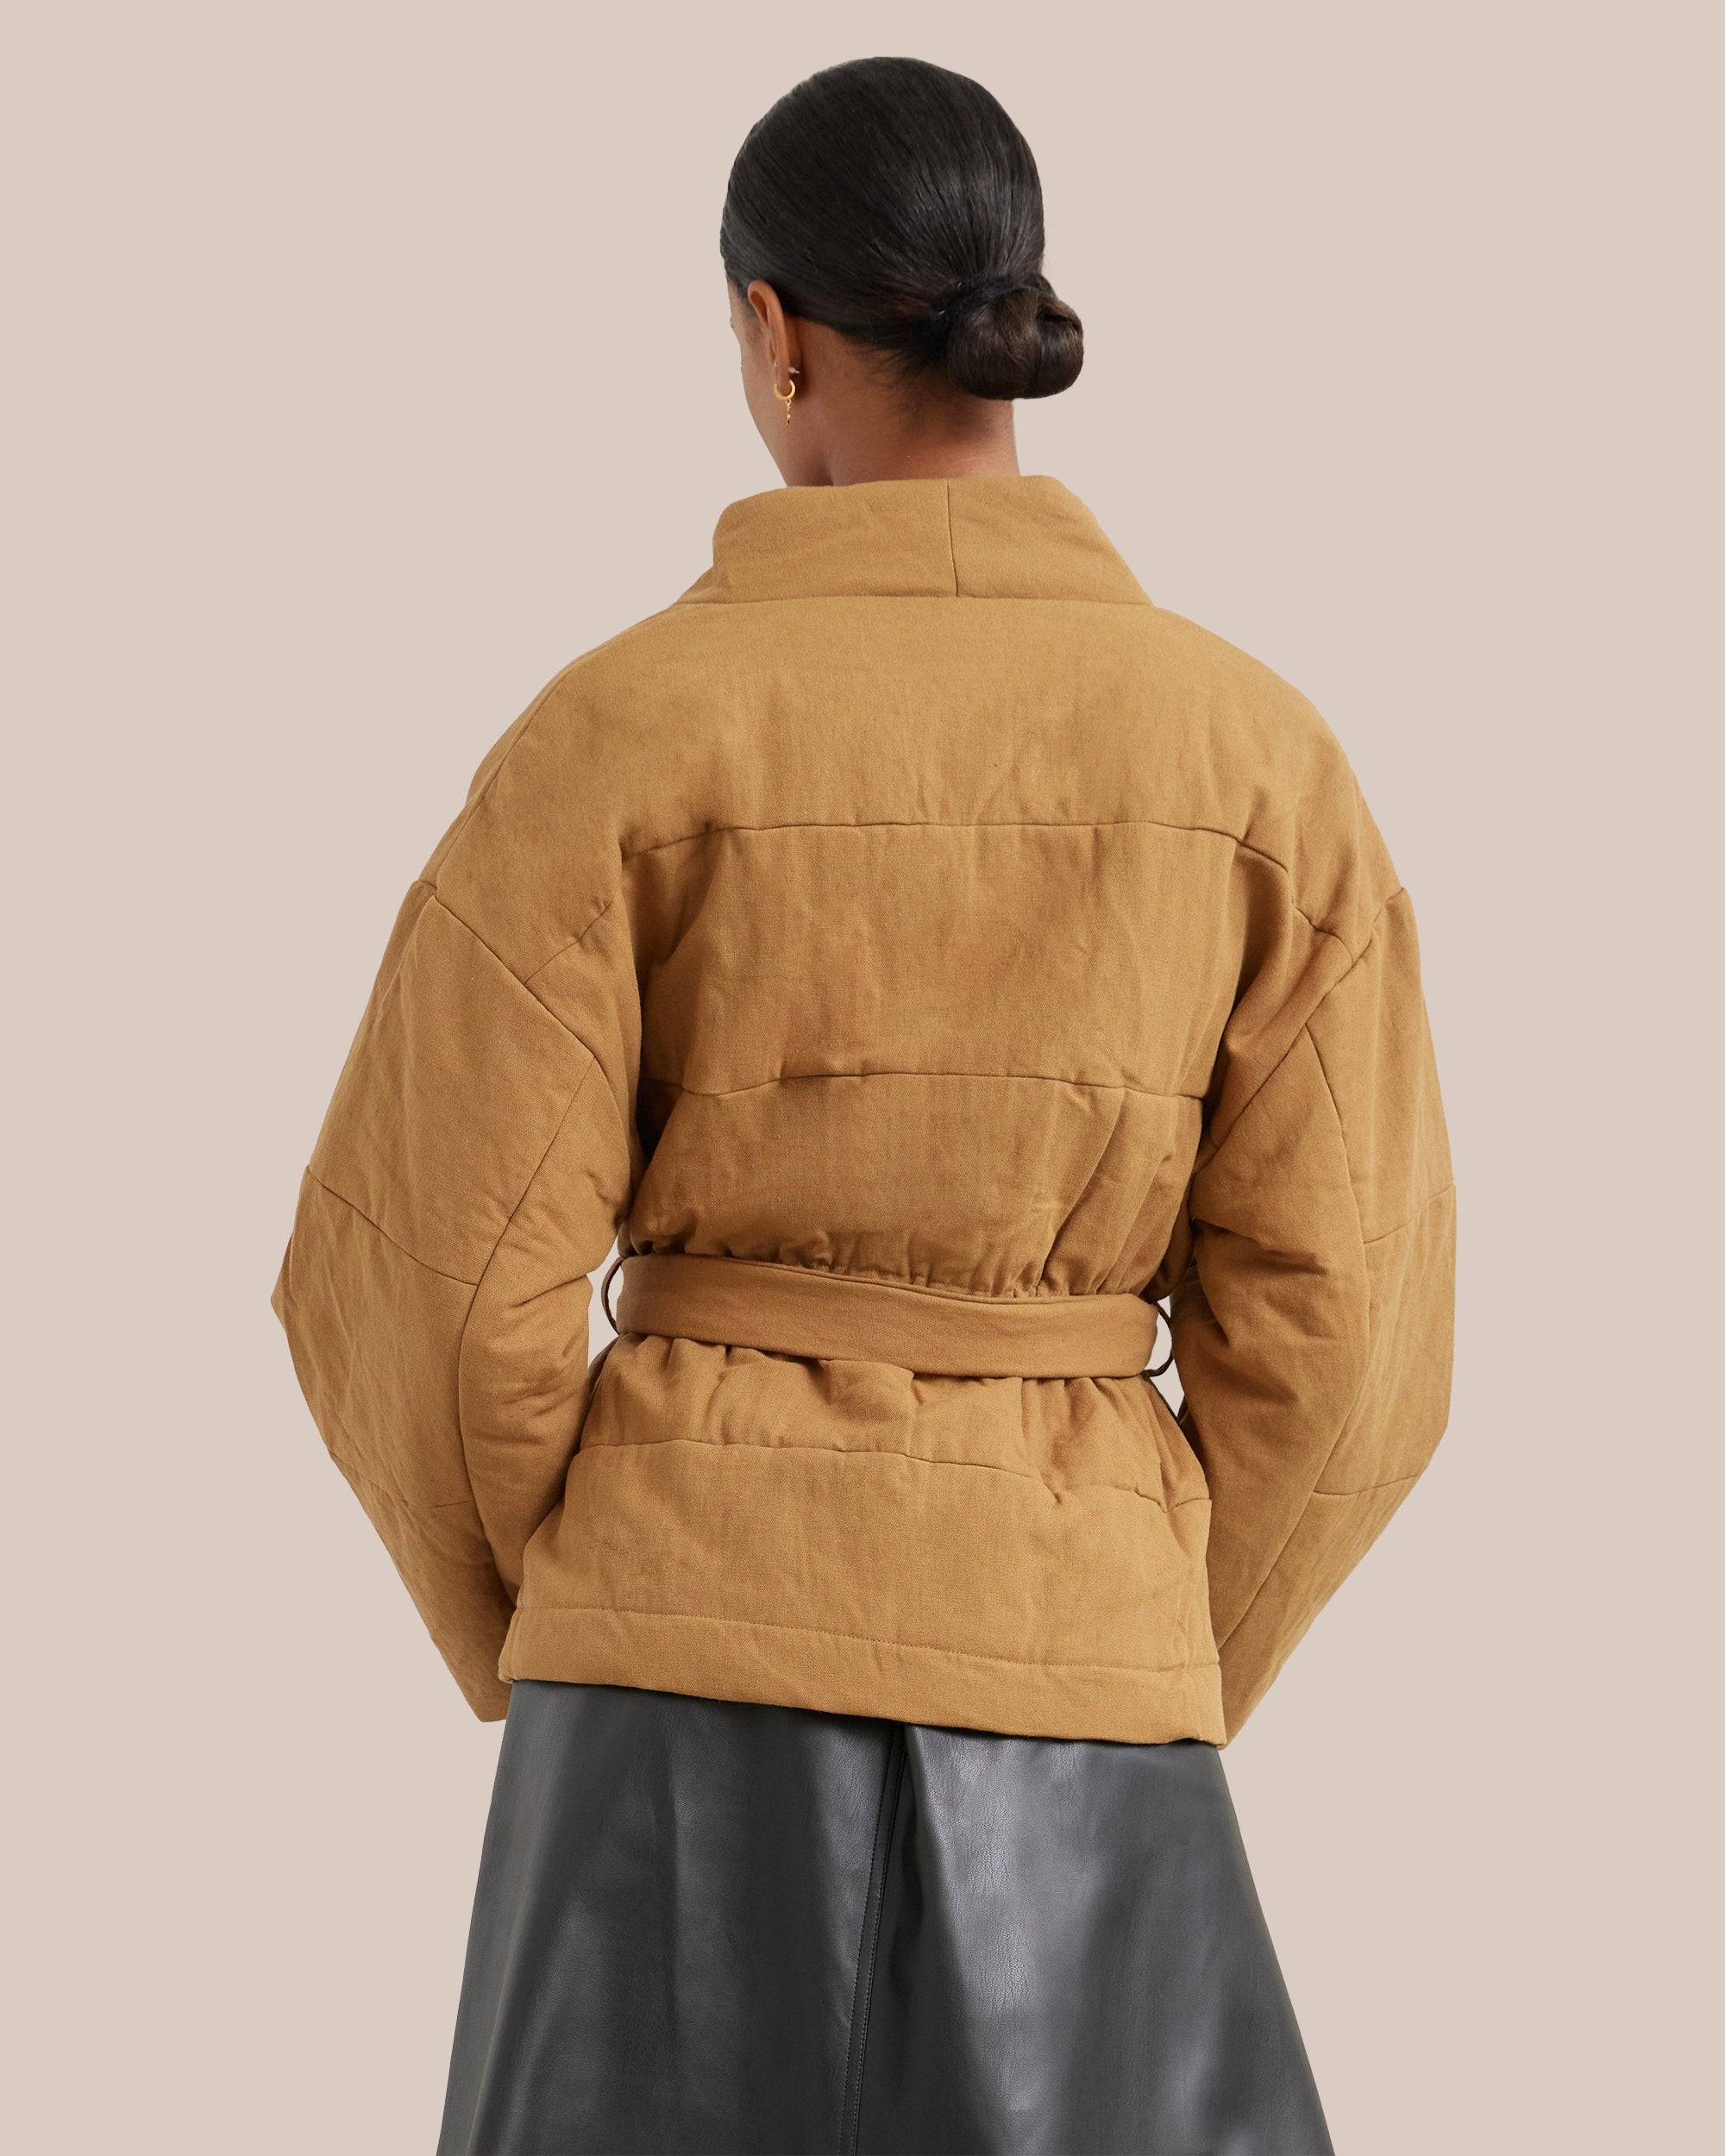 Aiko Kimono Puffer Jacket